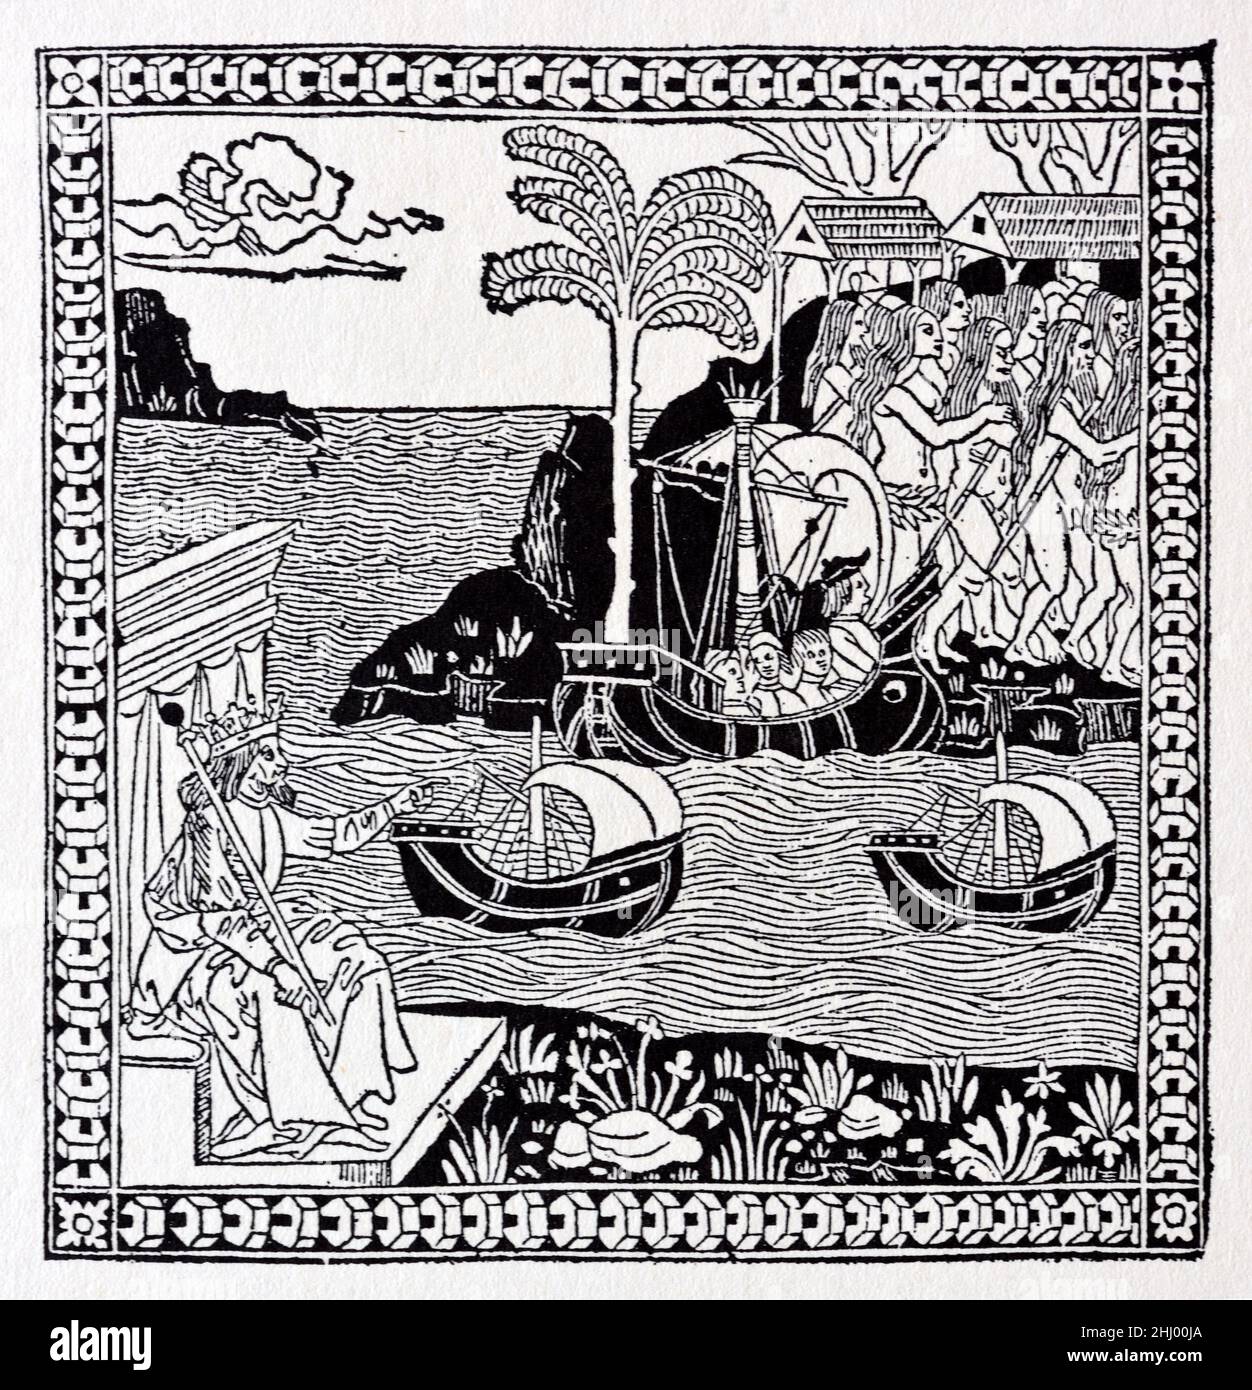 Holzschnitt von 1493 zeigt die Ankunft von Christoph Kolumbus in der Kabbanischen, Westindischen Inseln, Amerika oder der Neuen Welt in1492. Die Abbildung zeigt den spanischen König Ferdinand II. Von Aragon, der unten links auf seinem Thron sitzt. Vintage Holzschnitt, Gravur oder Illustration Stockfoto